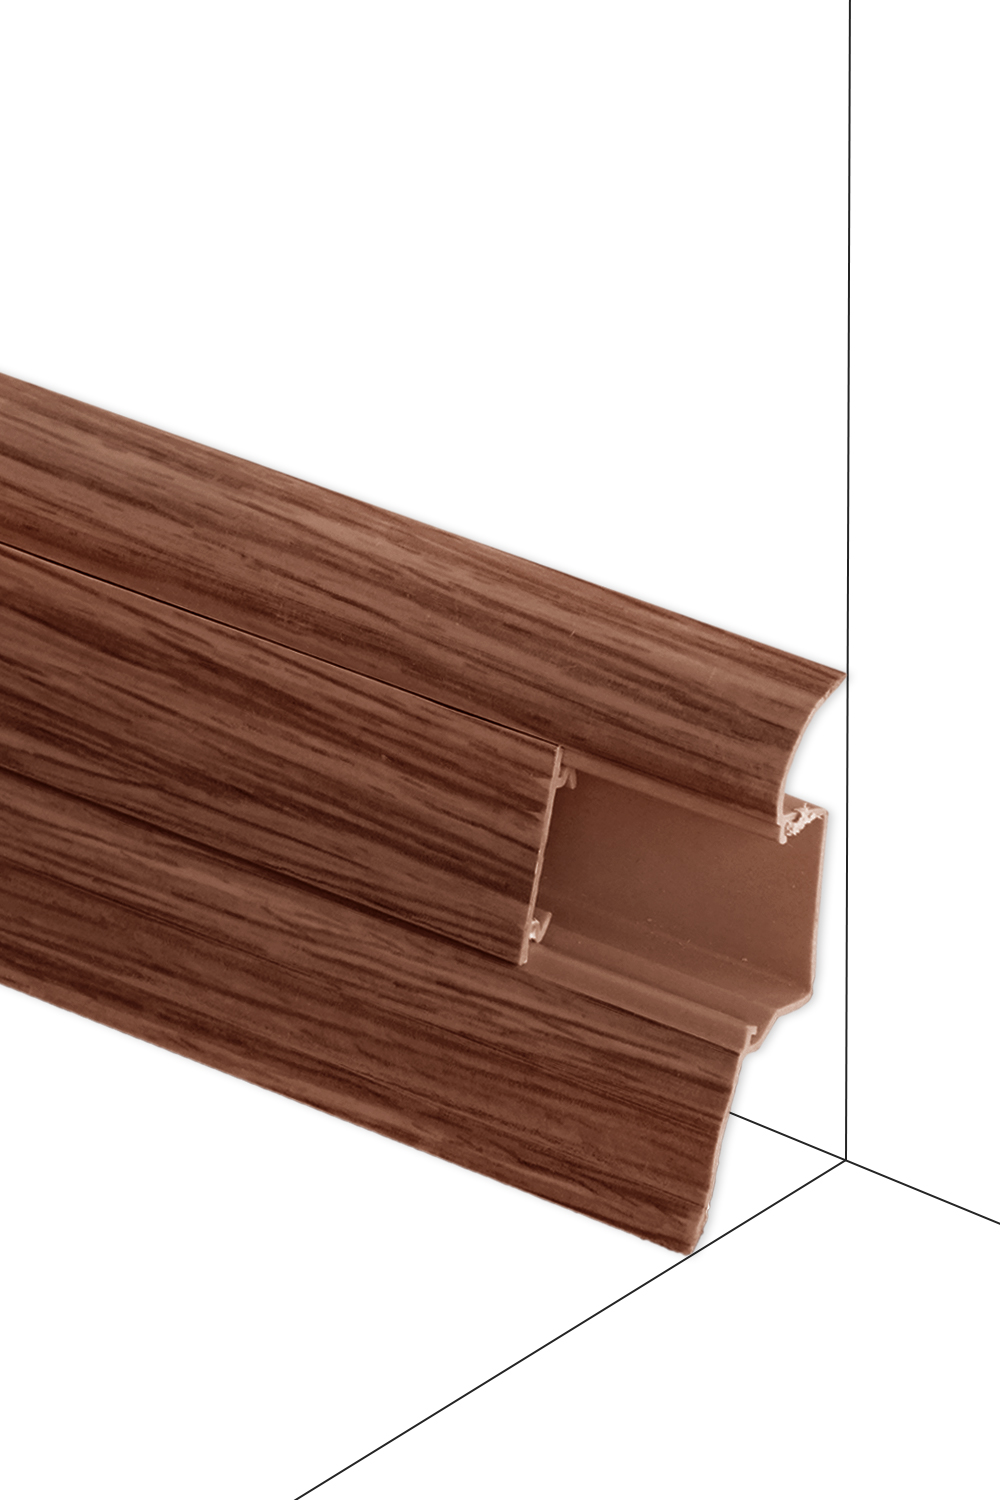 Podlahová lišta Döllken W167 - Nerbau - délka 250 cm Roh vnější 